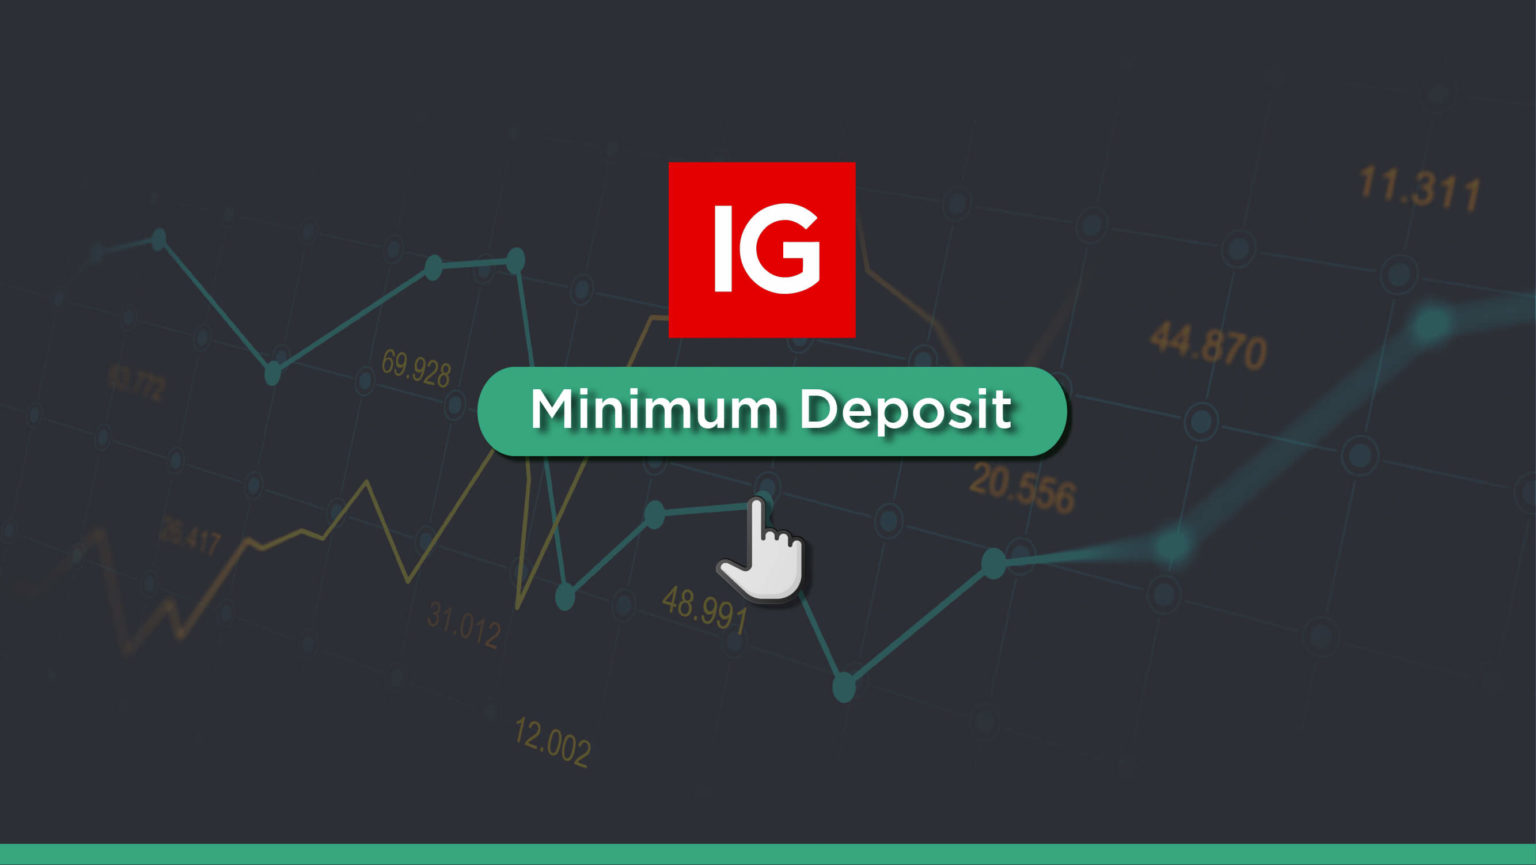 IG Minimum Deposit - Fees & Methods (2020 Guide)